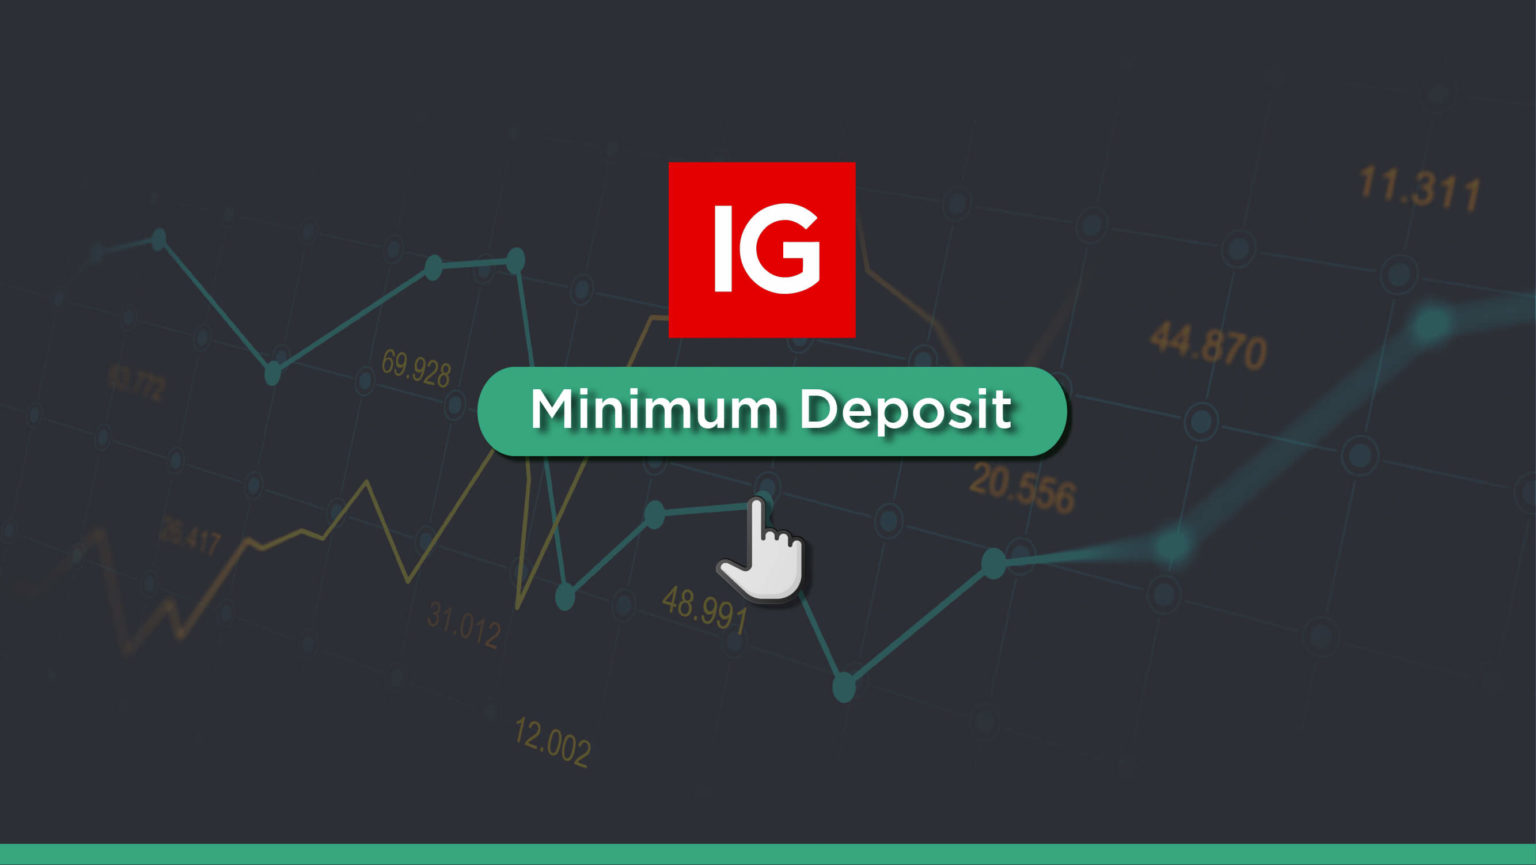 IG Minimum Deposit - Fees & Methods (2020 Guide)